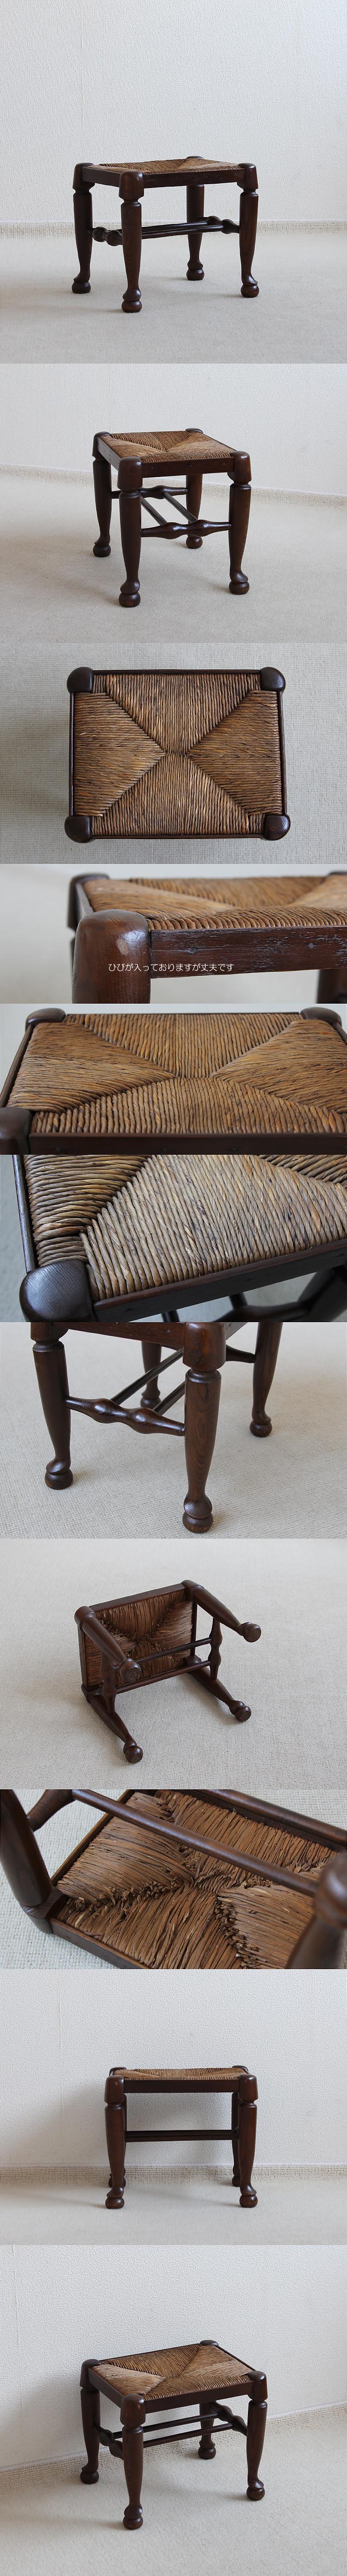 イギリス アンティーク ラッシュシート スツール イグサ 木製椅子 家具「編み込みシート」V-842